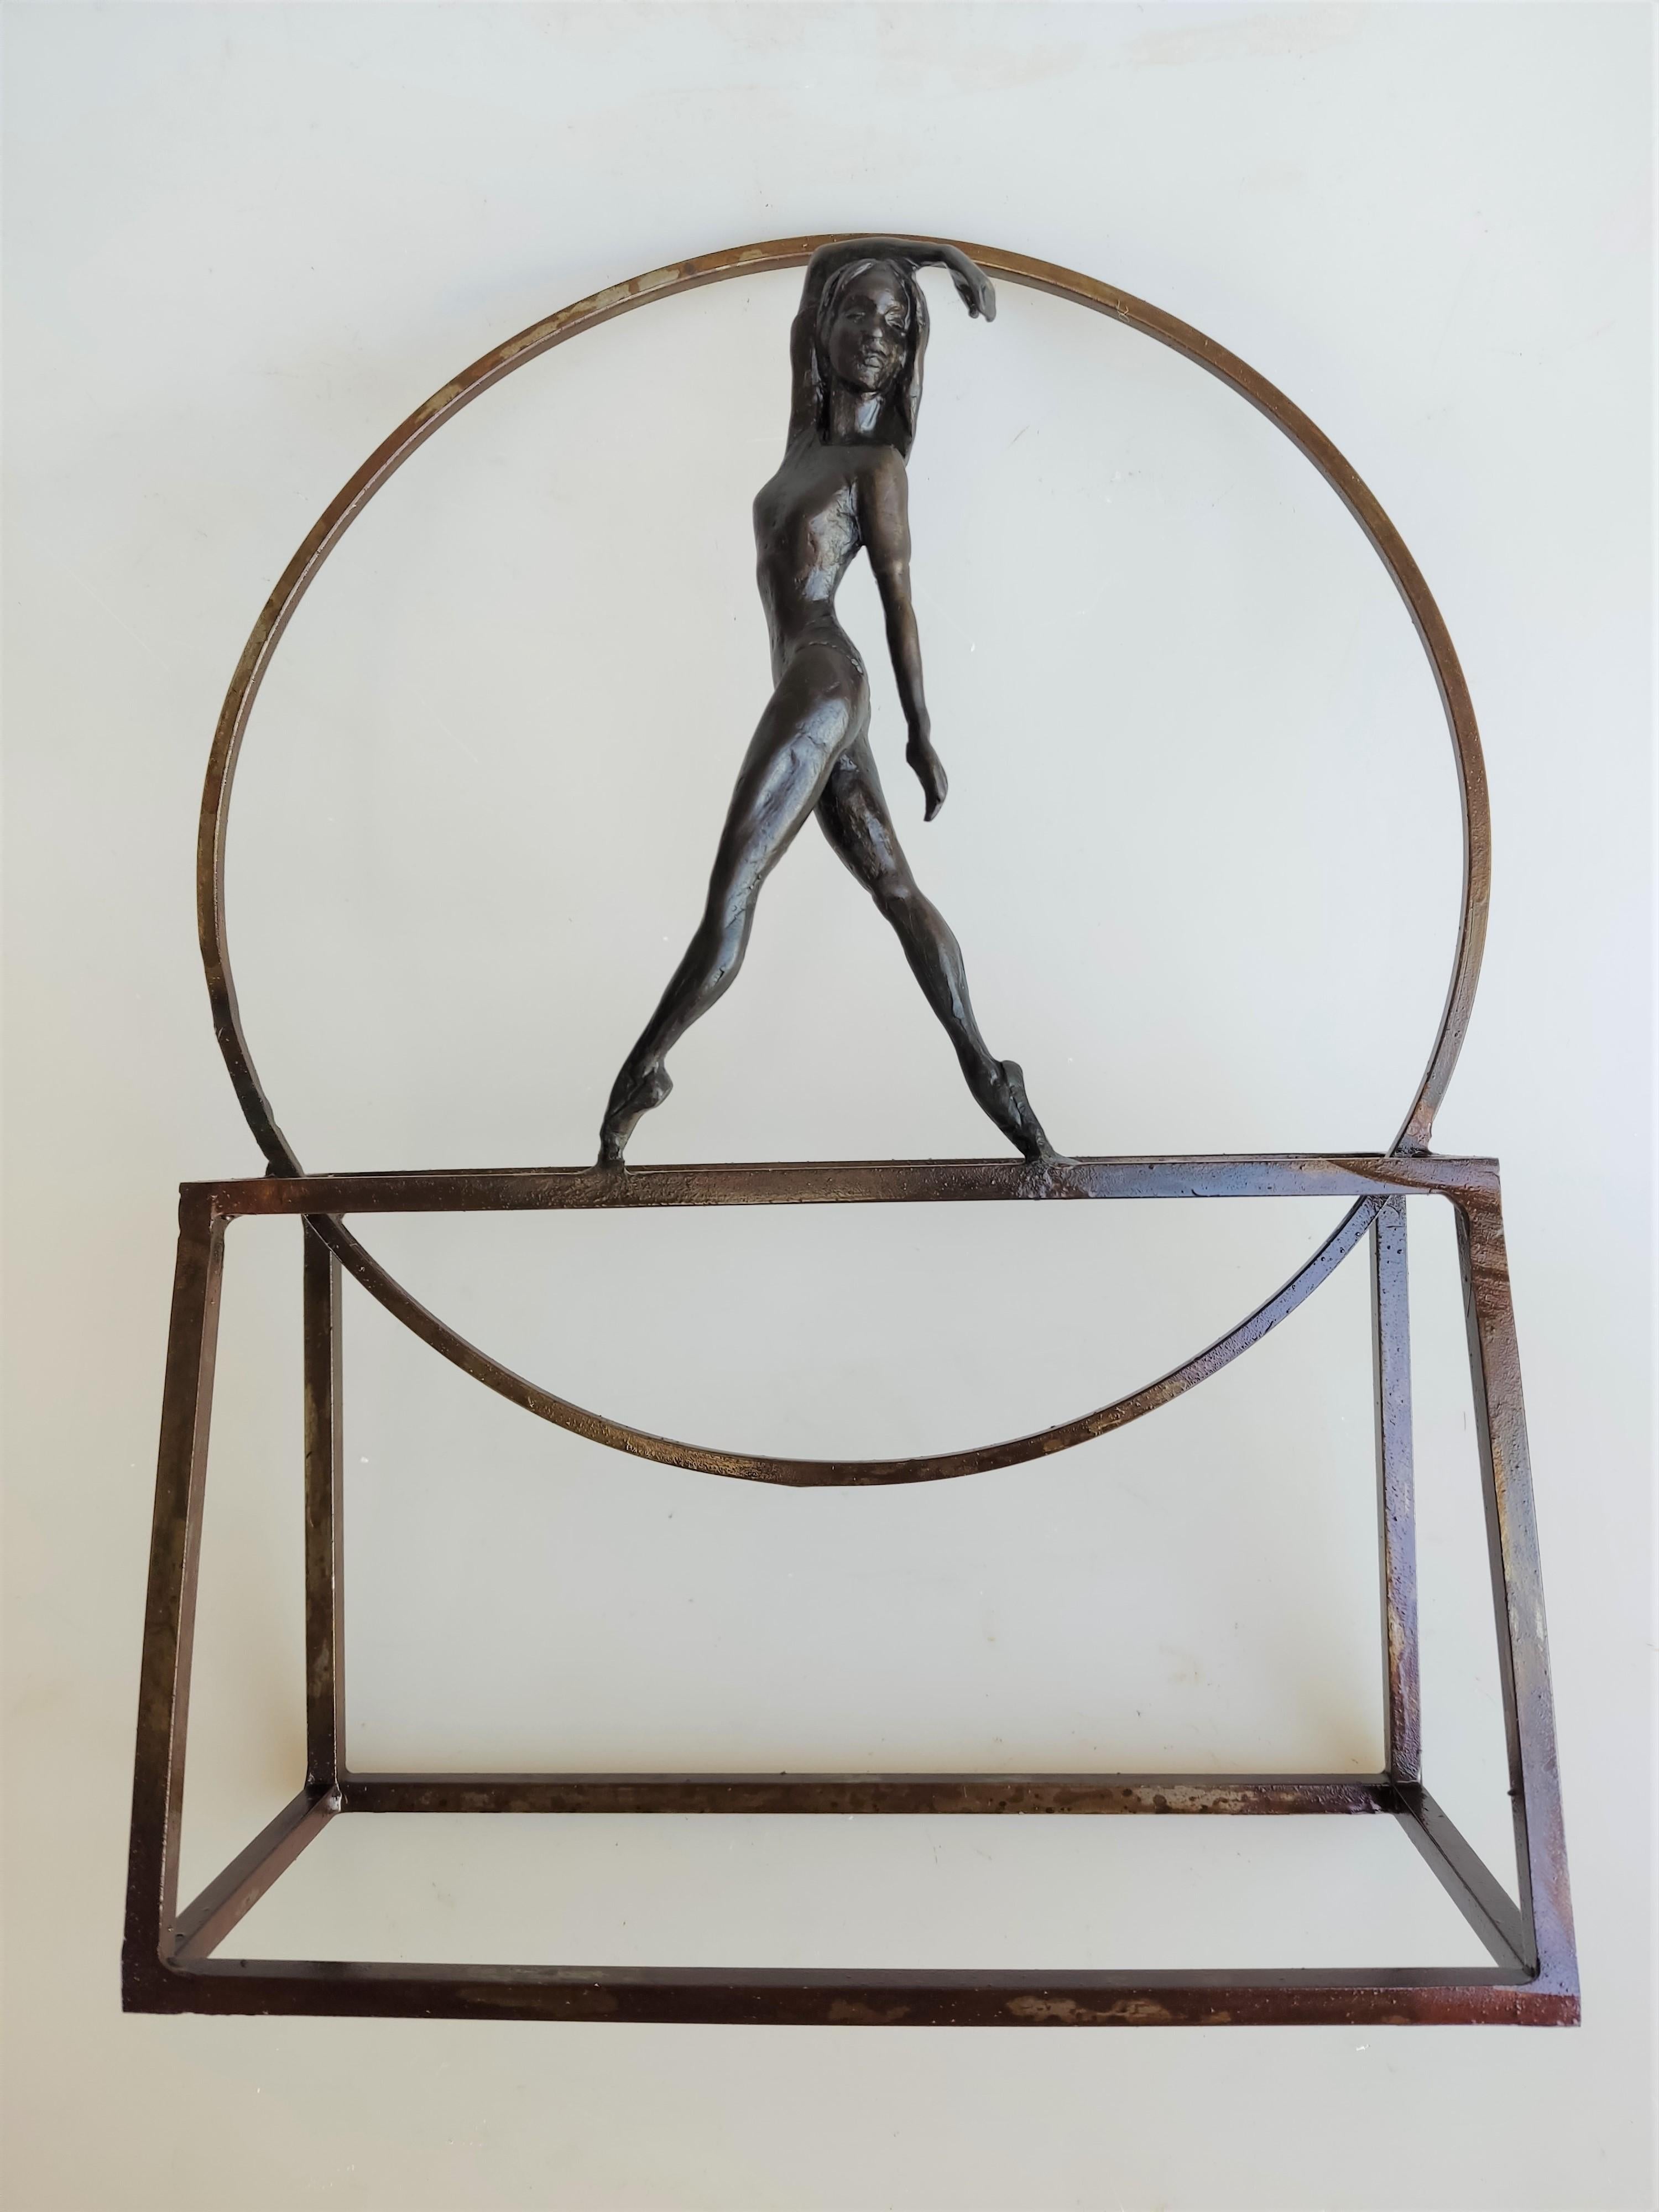 Joan Artigas Planas Figurative Sculpture - "Sunset" contemporary bronze table, mural sculpture figurative girl dance sunset